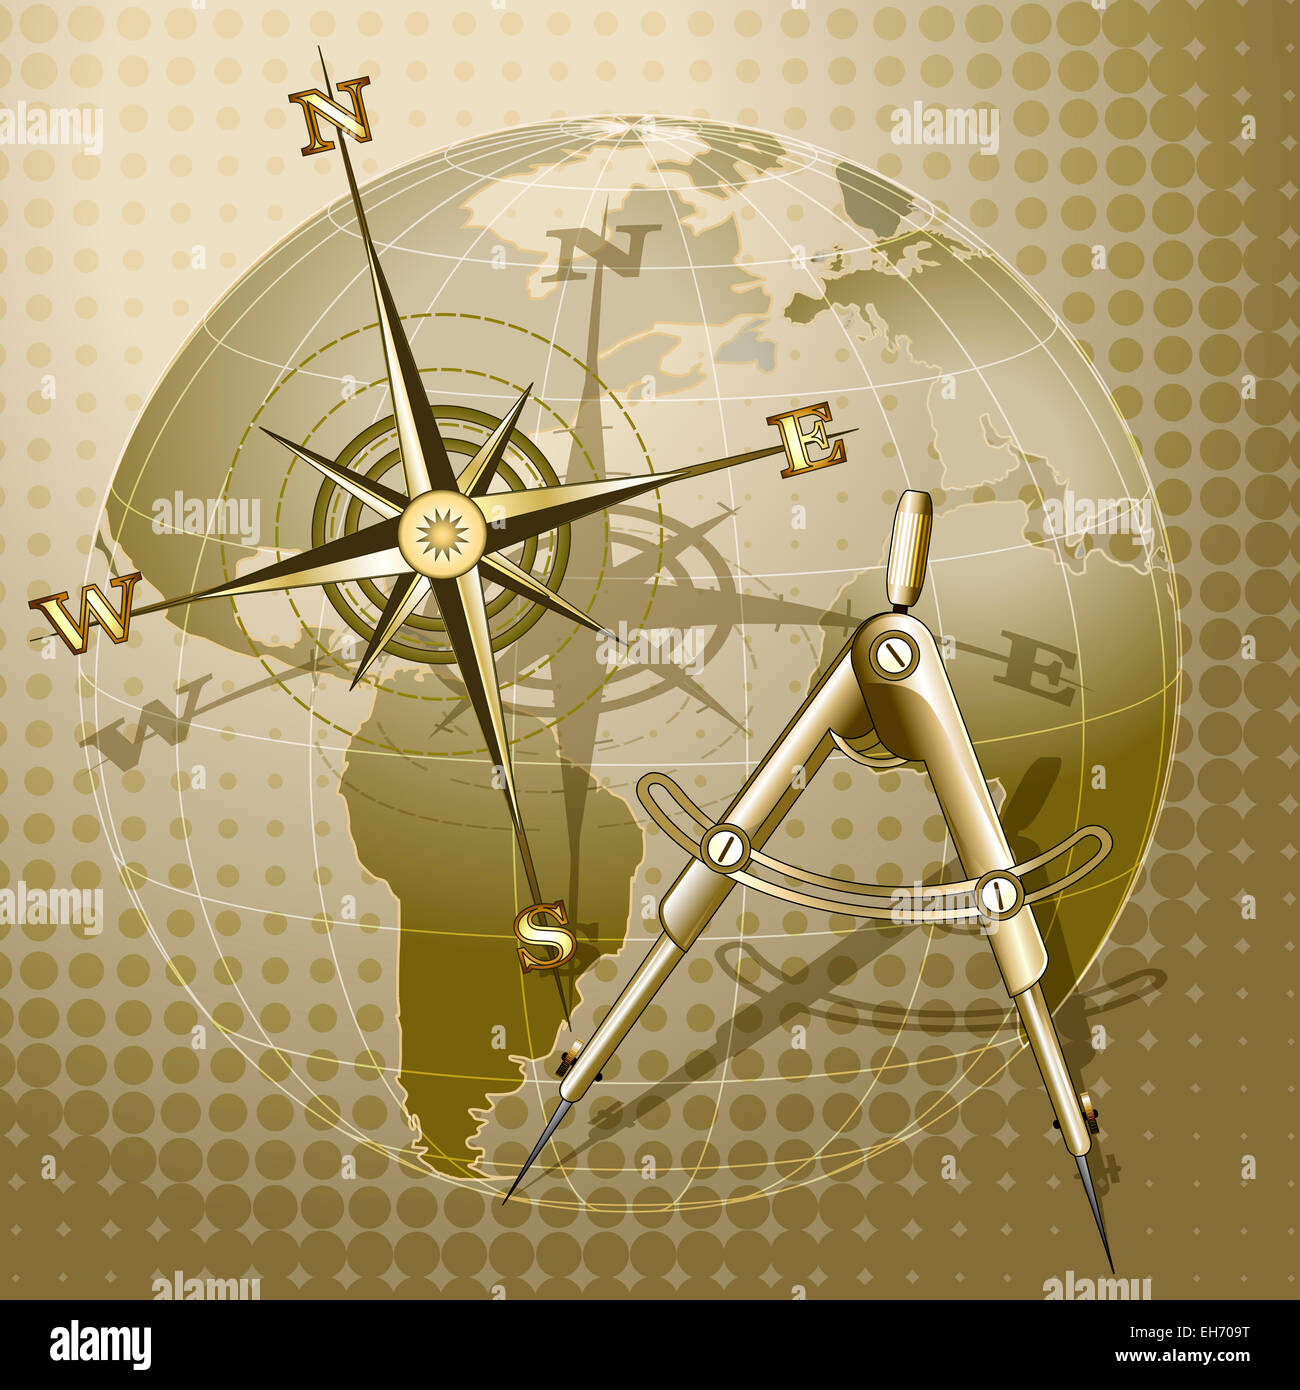 Abbildung mit Trennwand und Windrose gegen Globus gezeichnet im retro-Stil mit Halbton-Muster Stockfoto